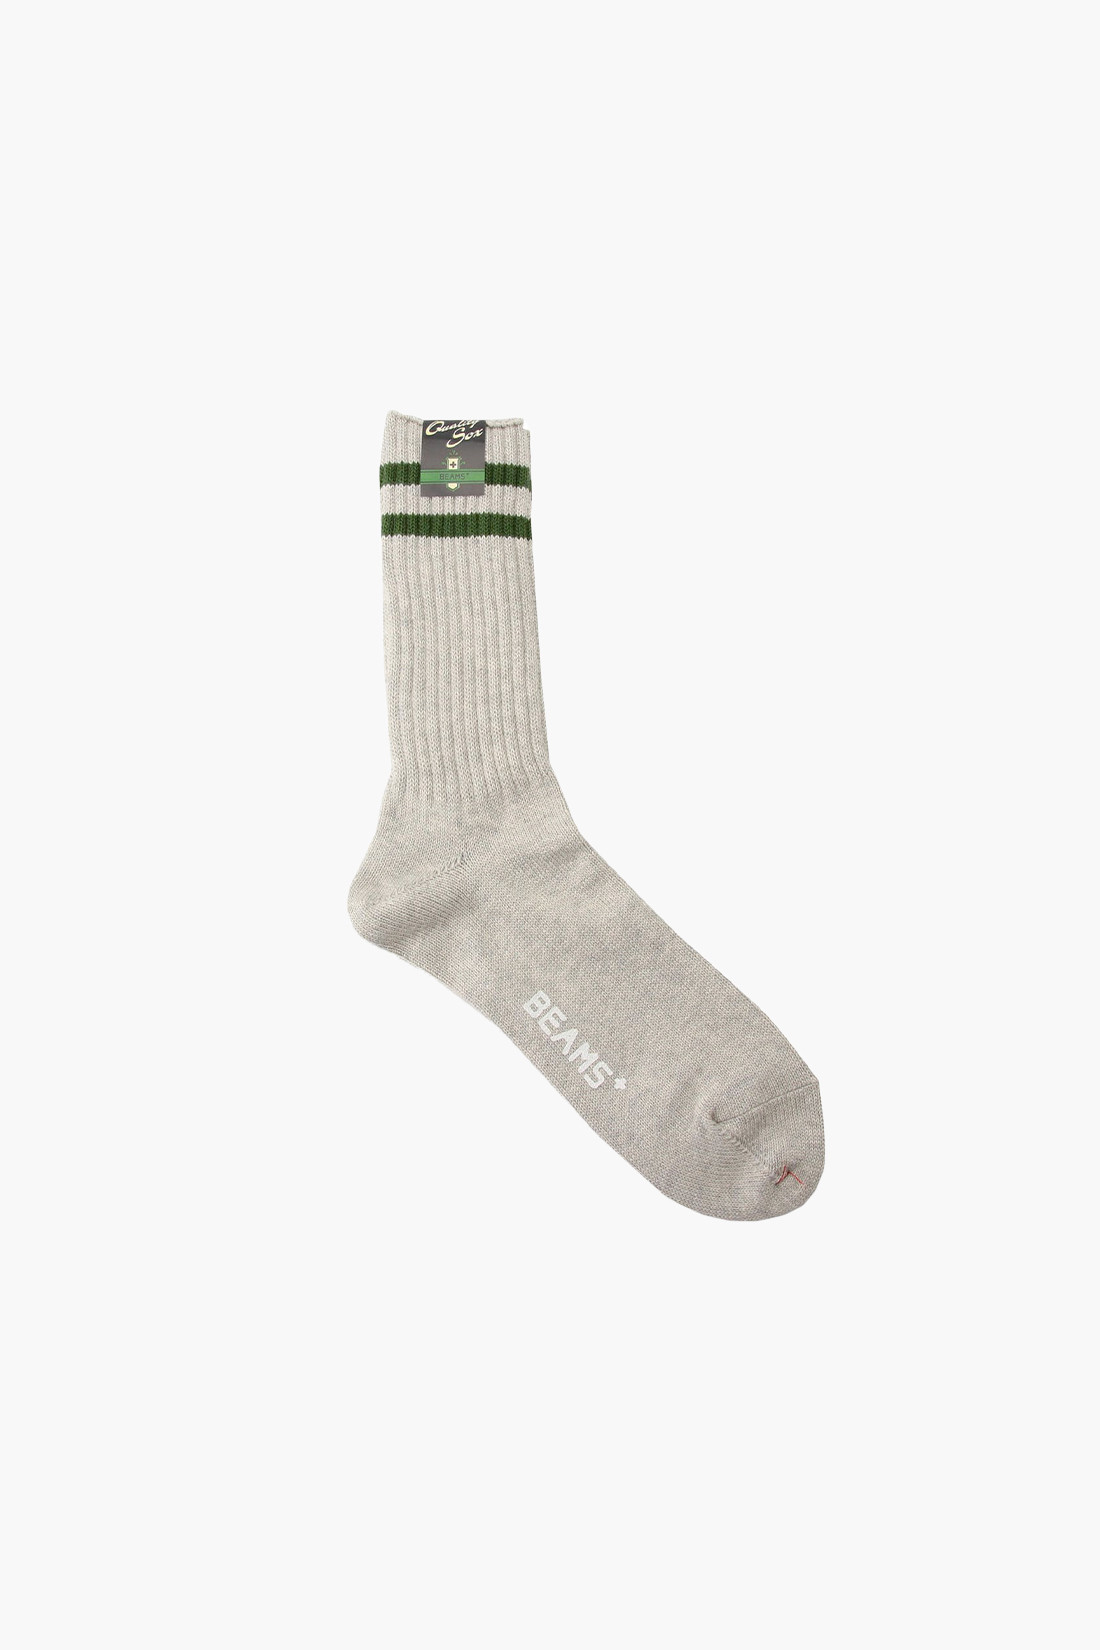 Schoolboy socks Gray/green